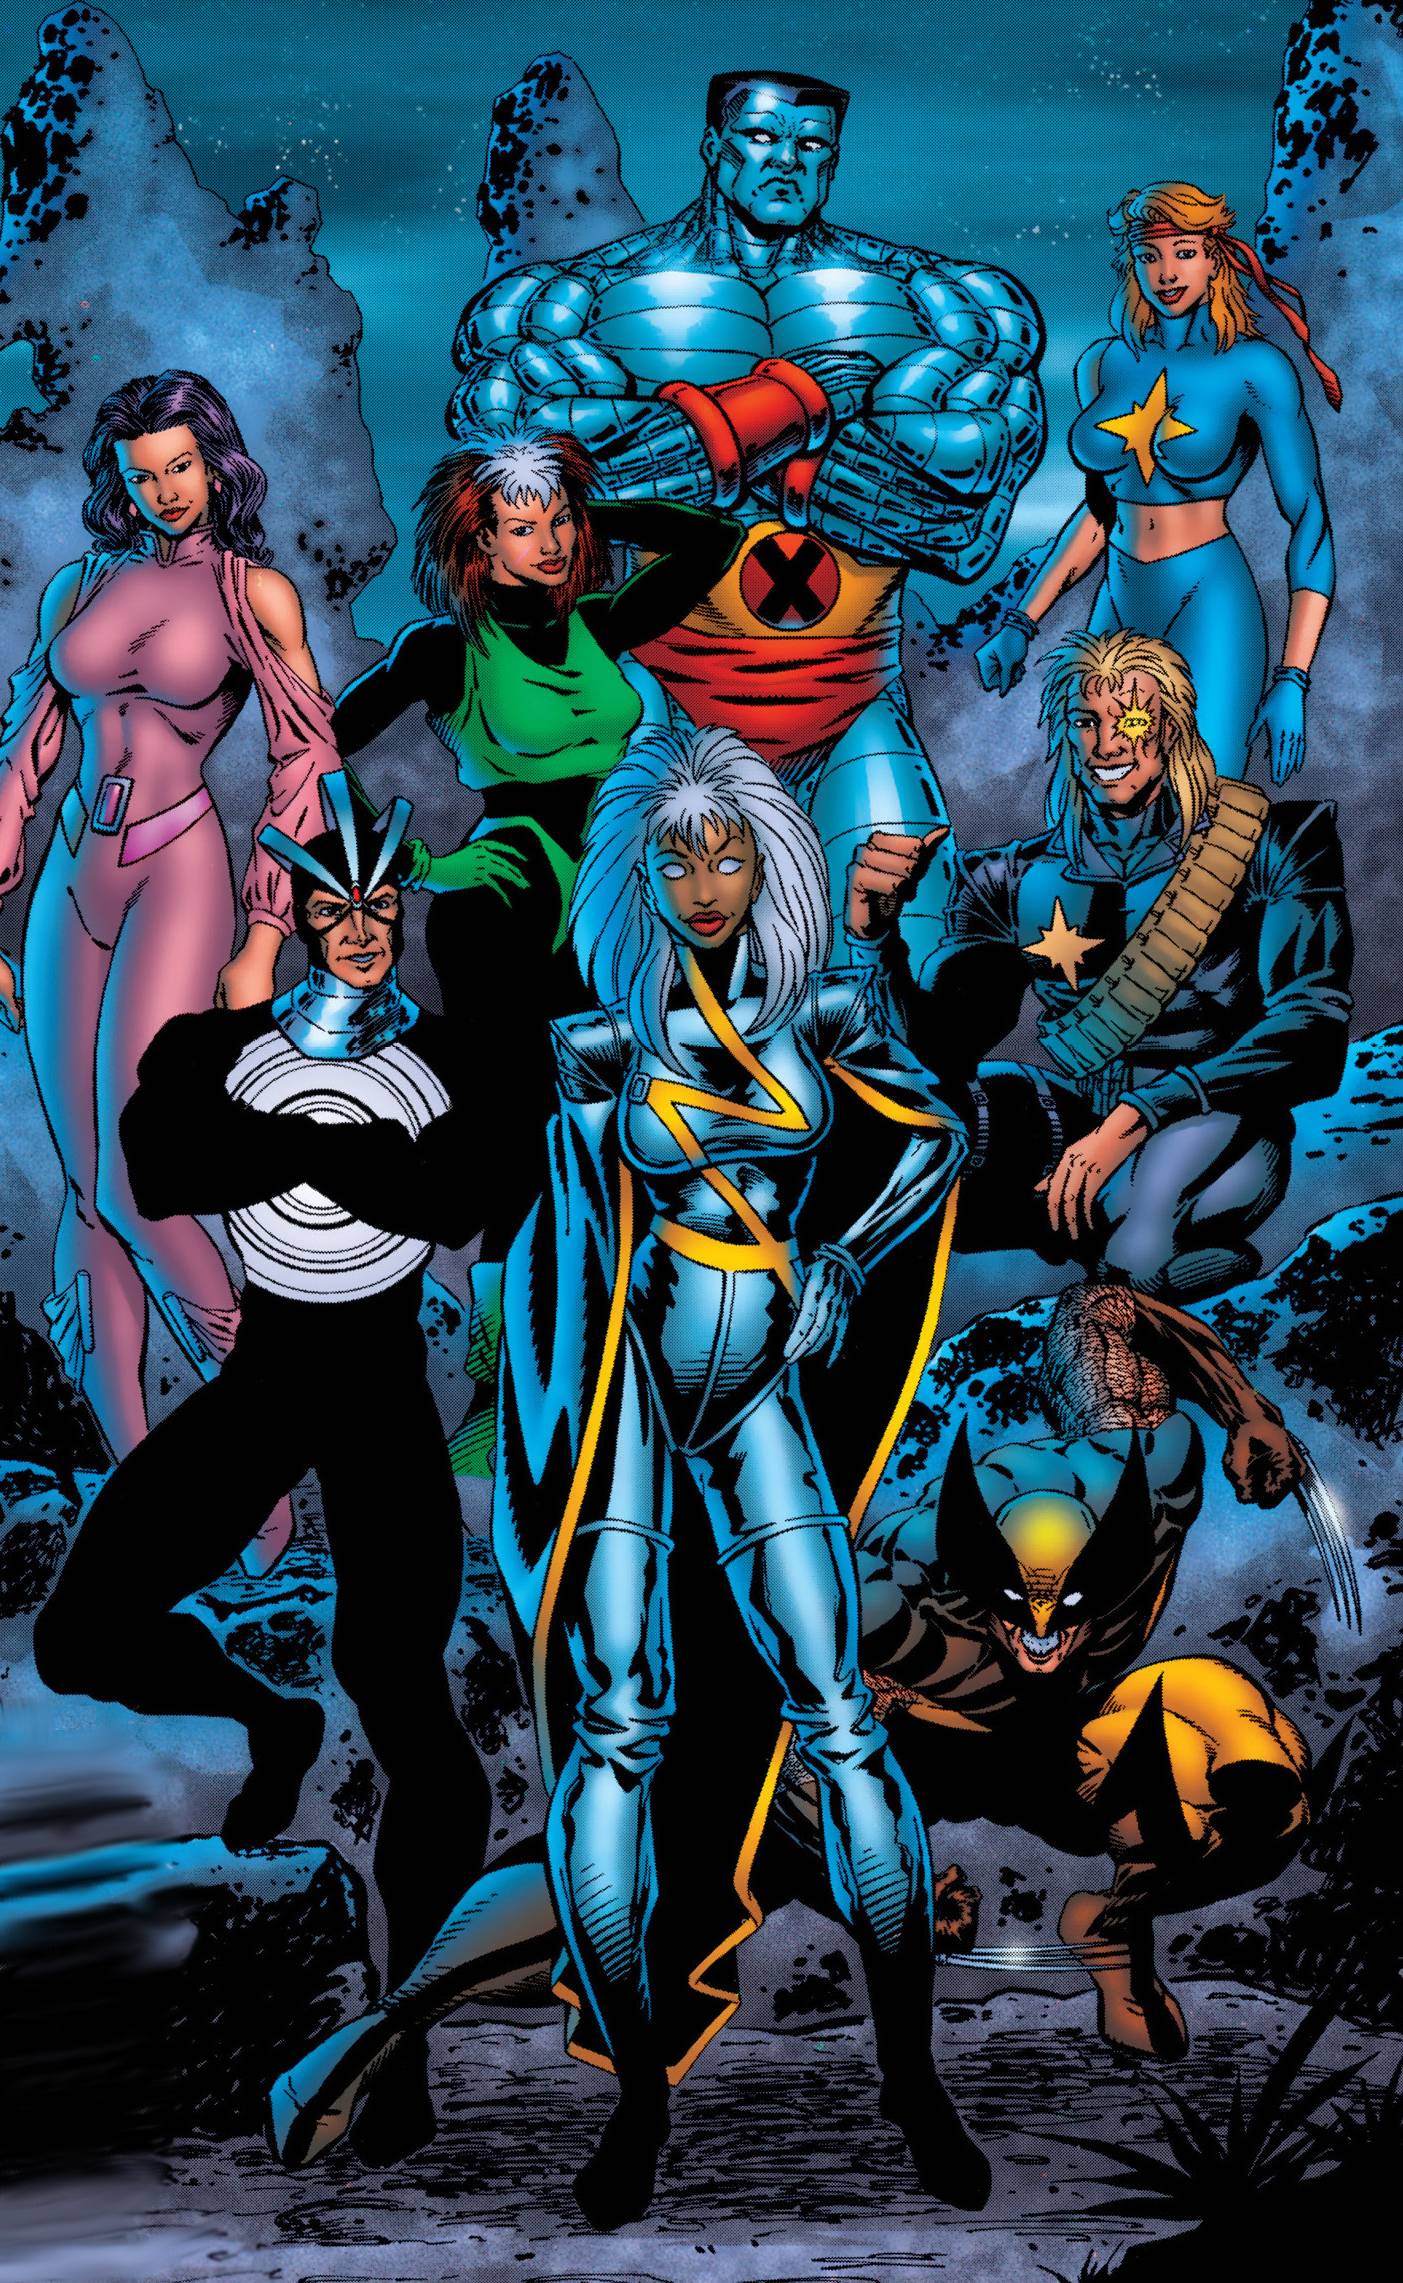 X-MENは2000年から始まるスーパーヒーロー集団の映画作品